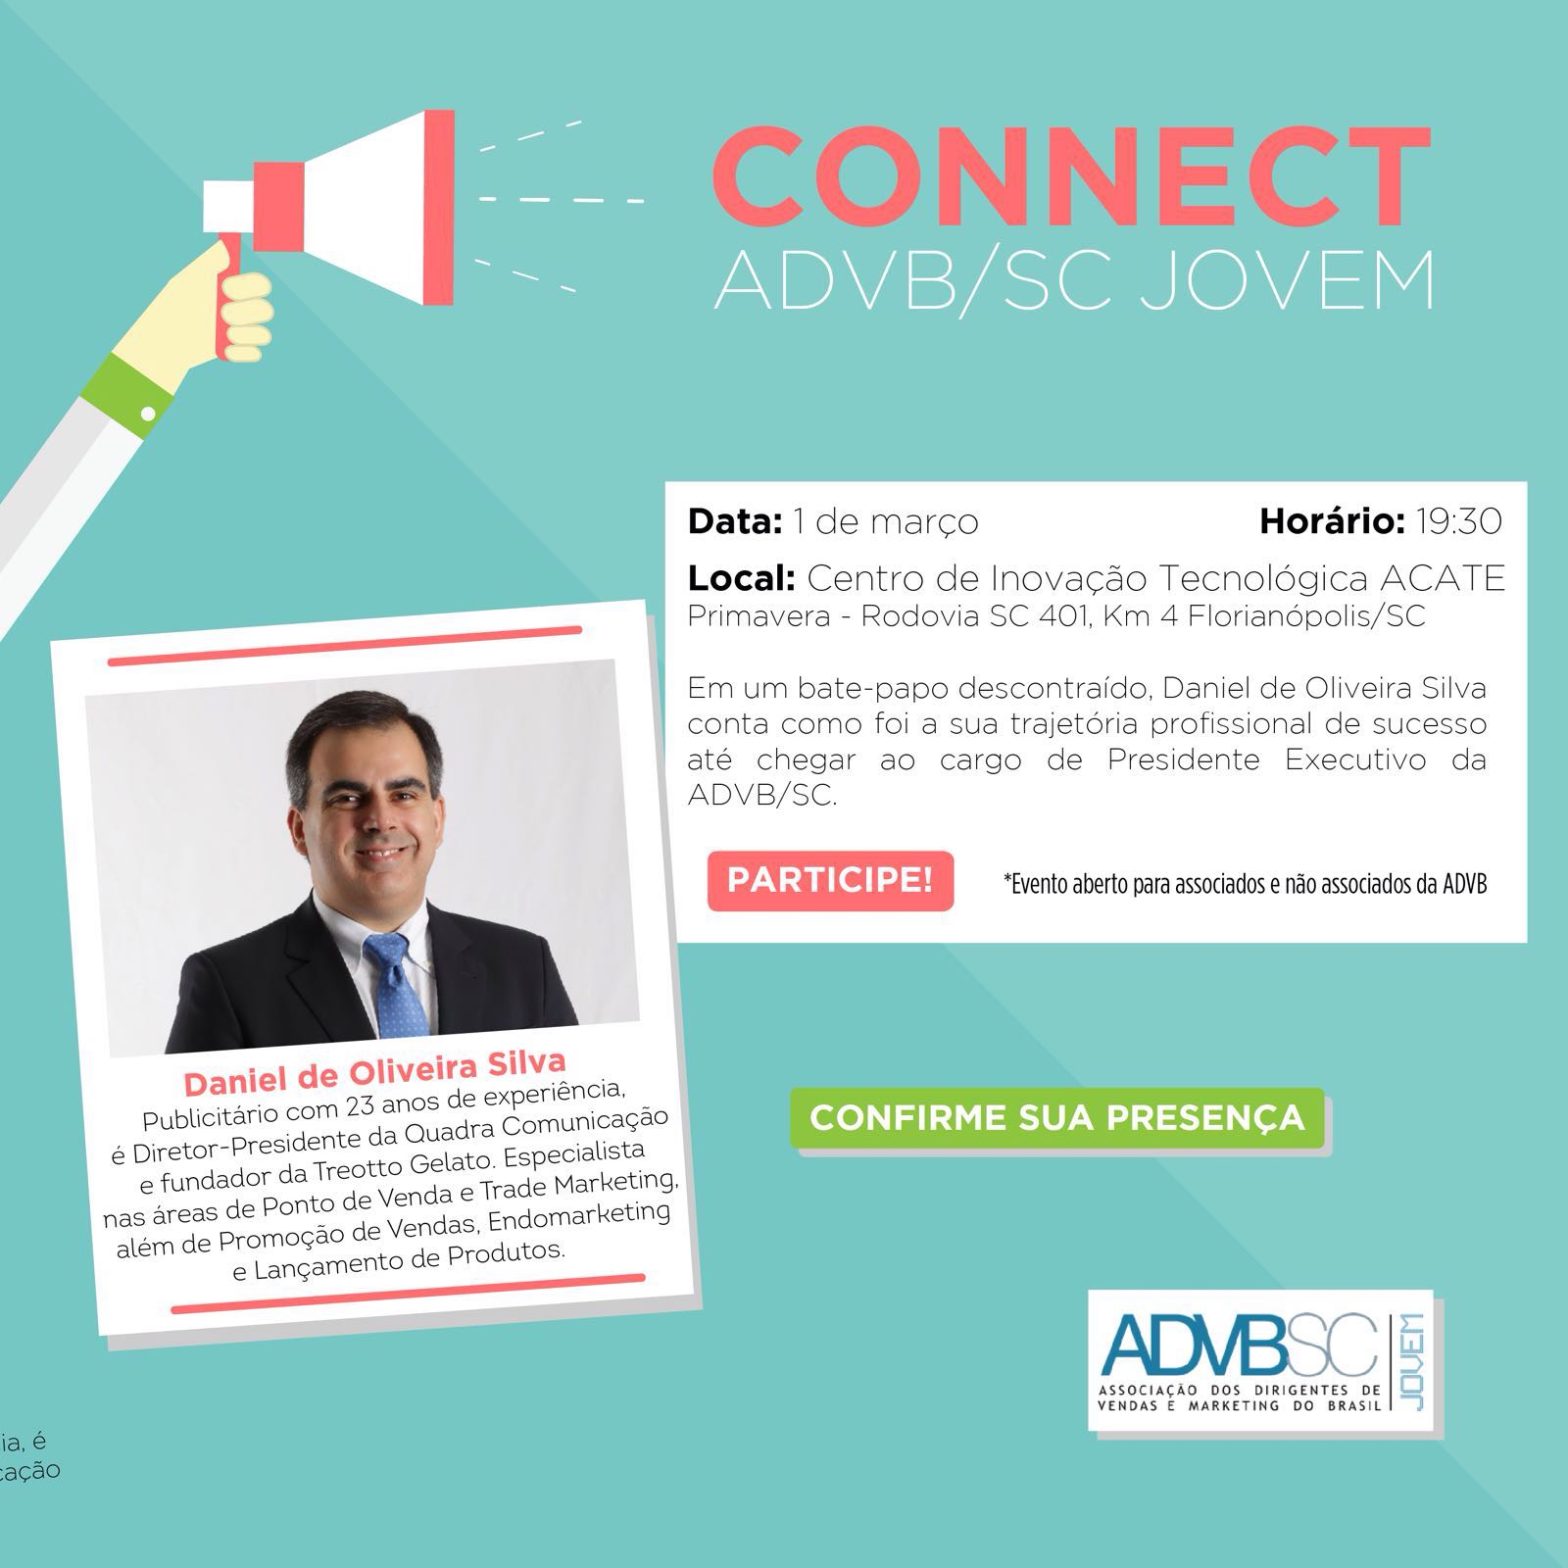 Grupo ADVB/SC Jovem promove bate-papo com Daniel Silva sobre sua trajetória empreendedora até o cargo de Presidente da ADVB/SC